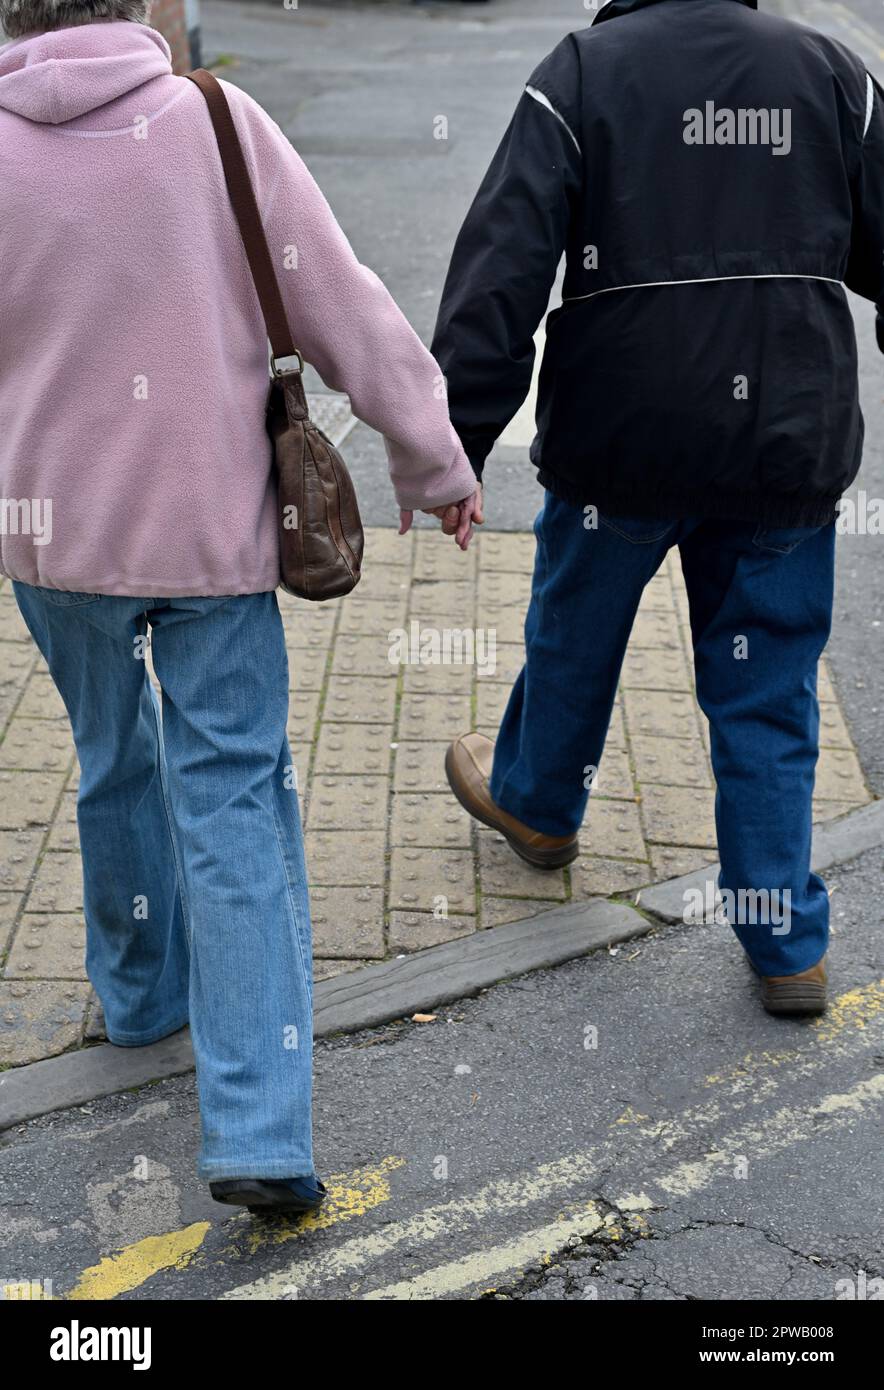 Ein älteres Paar, das auf der Straße wegläuft, auf dem Bürgersteig, Händchen hält Stockfoto